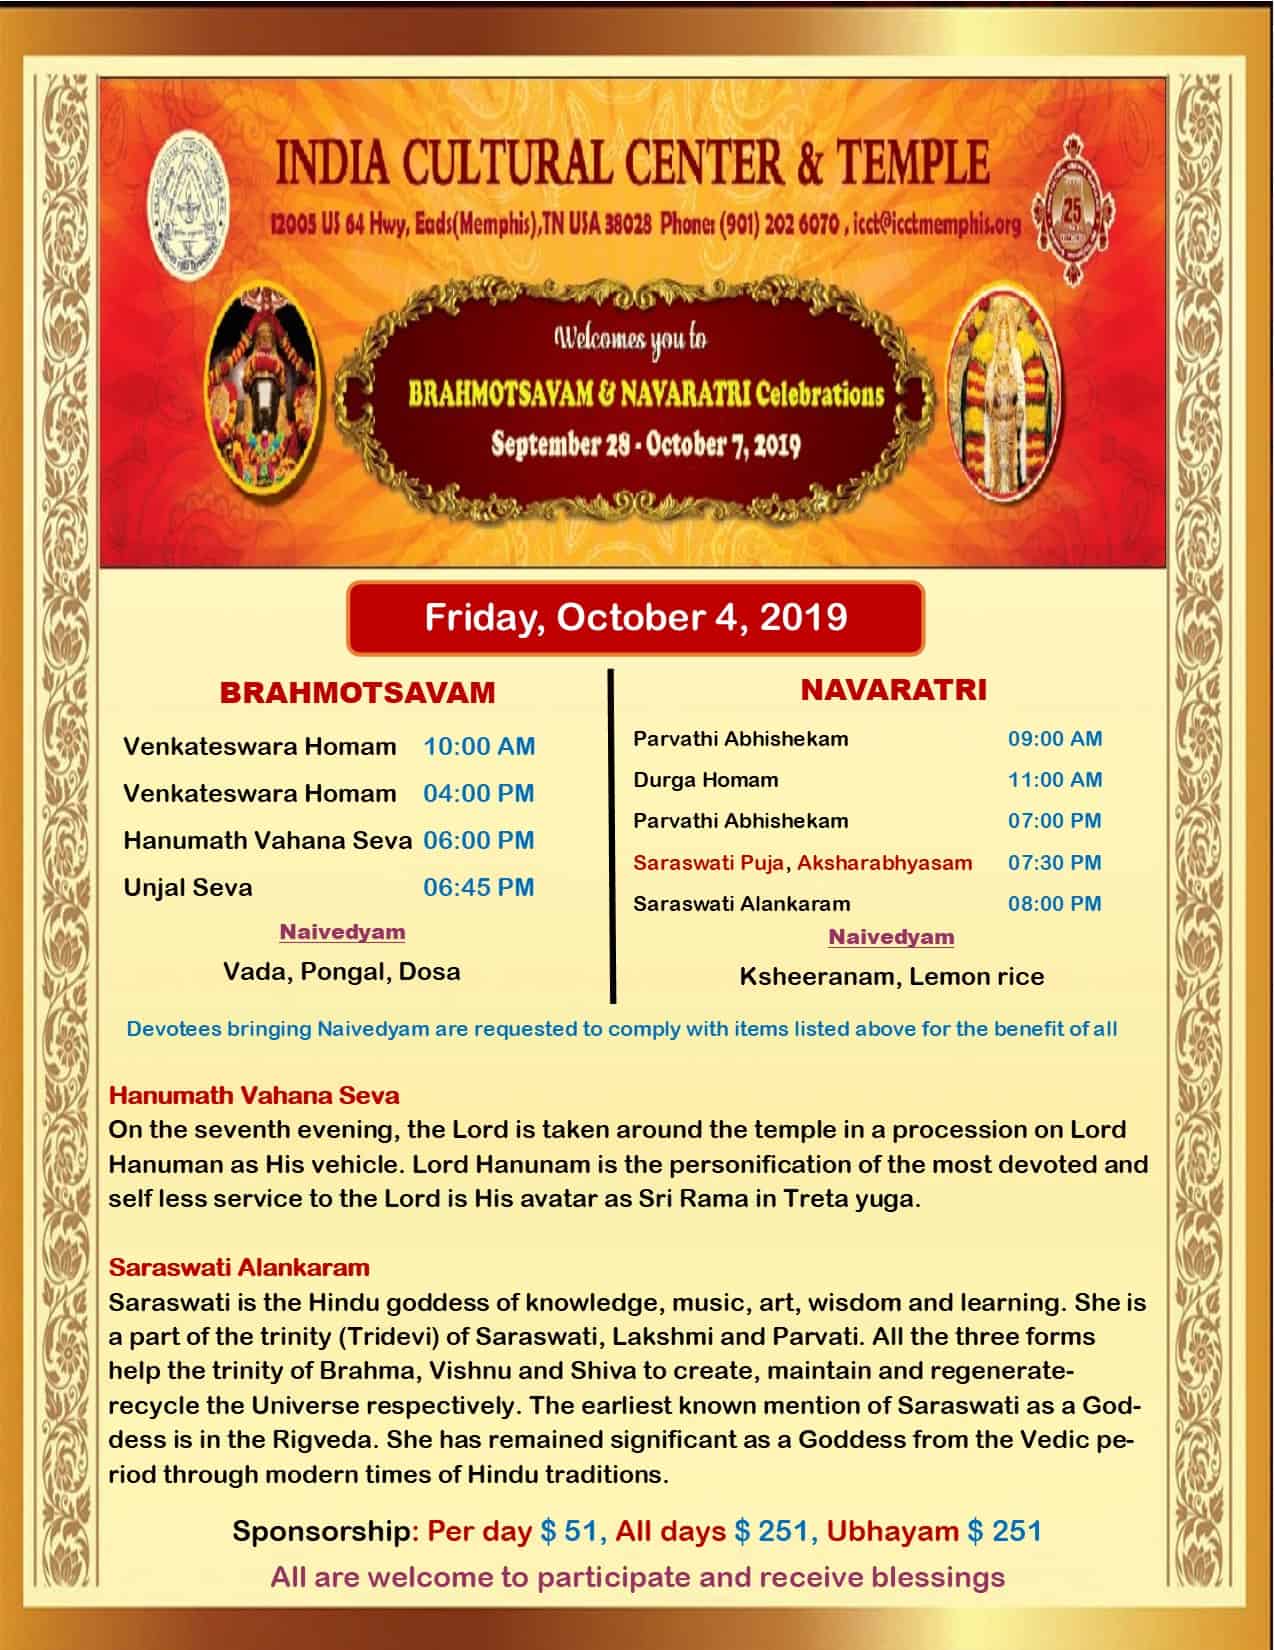 Brahmotsavam and Navaratri Celebrations